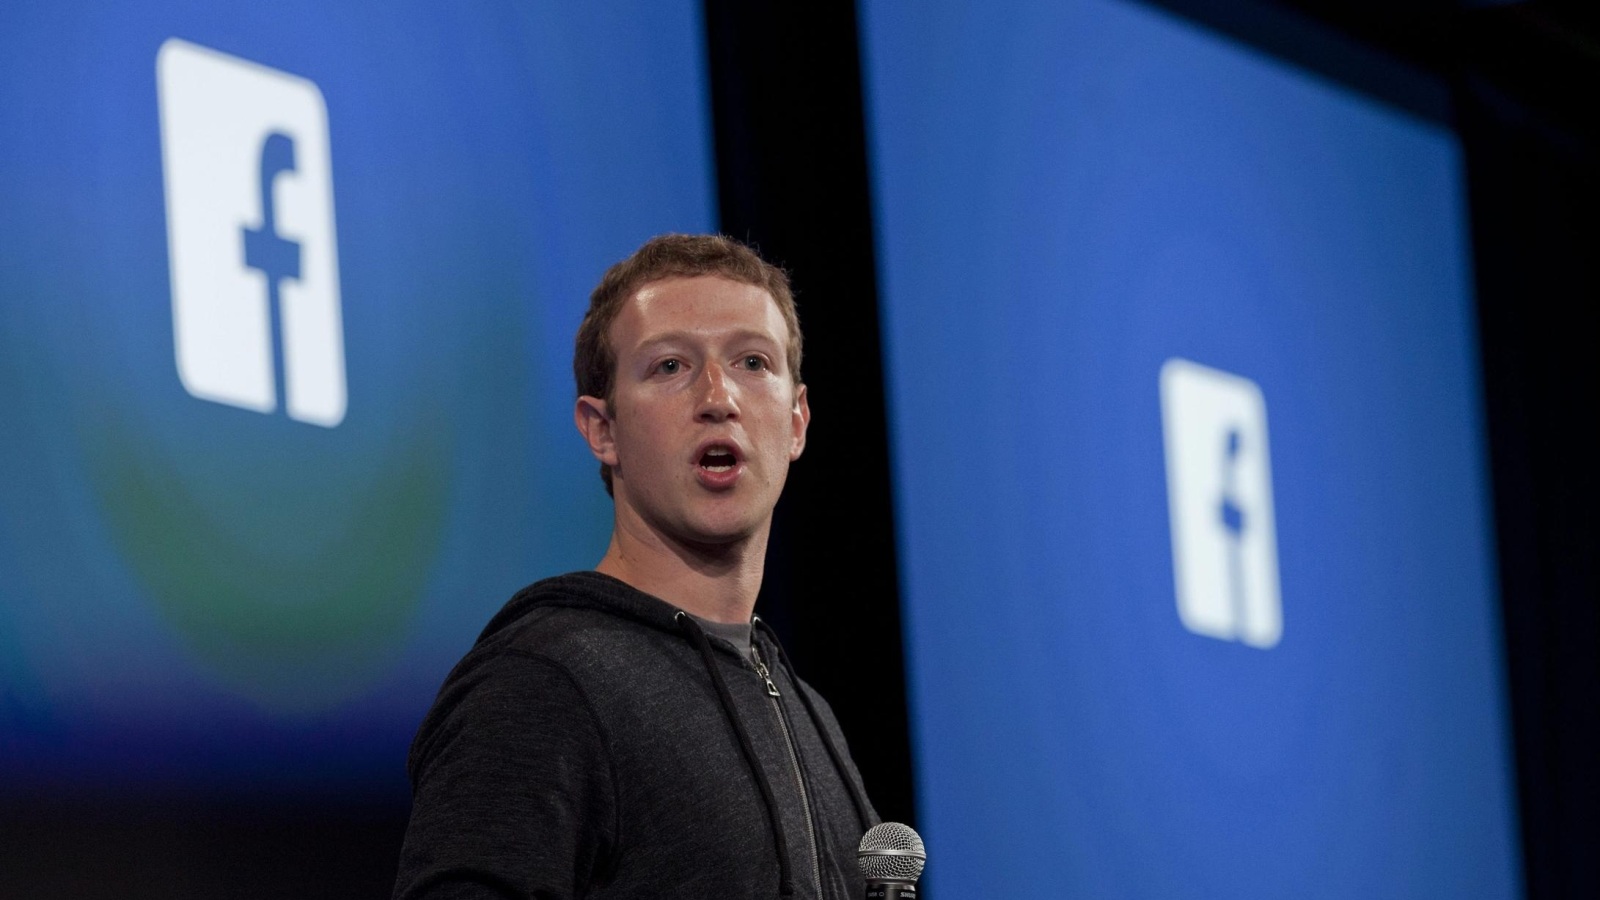 ‪مؤسس فيسبوك مارك زوكربيرغ زادت ثروته العام الماضي 11.2 مليار دولار‬ (الأوروبية)